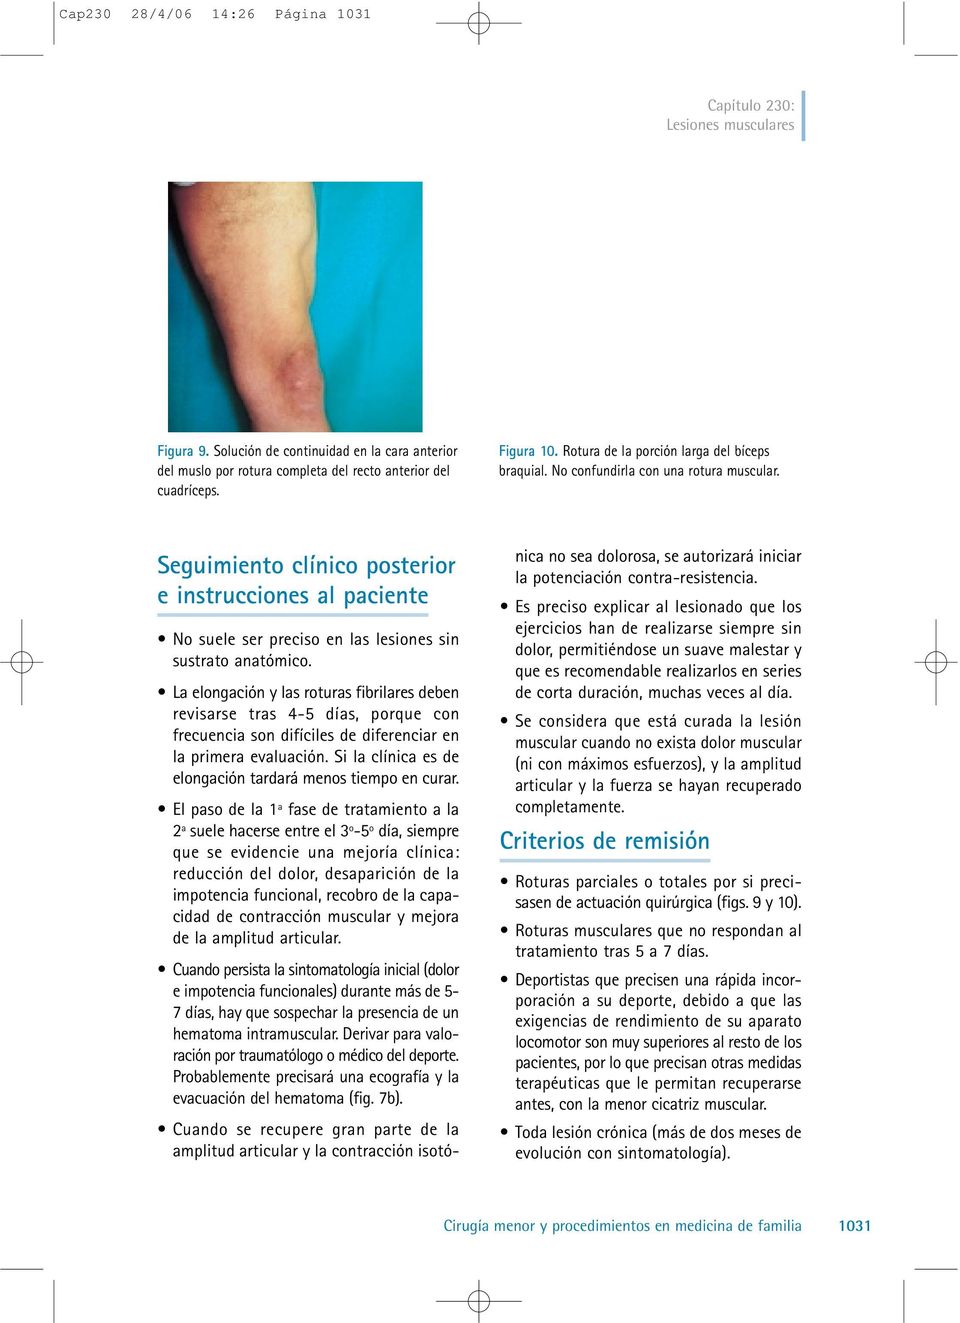 Seguimiento clínico posterior e instrucciones al paciente No suele ser preciso en las lesiones sin sustrato anatómico.